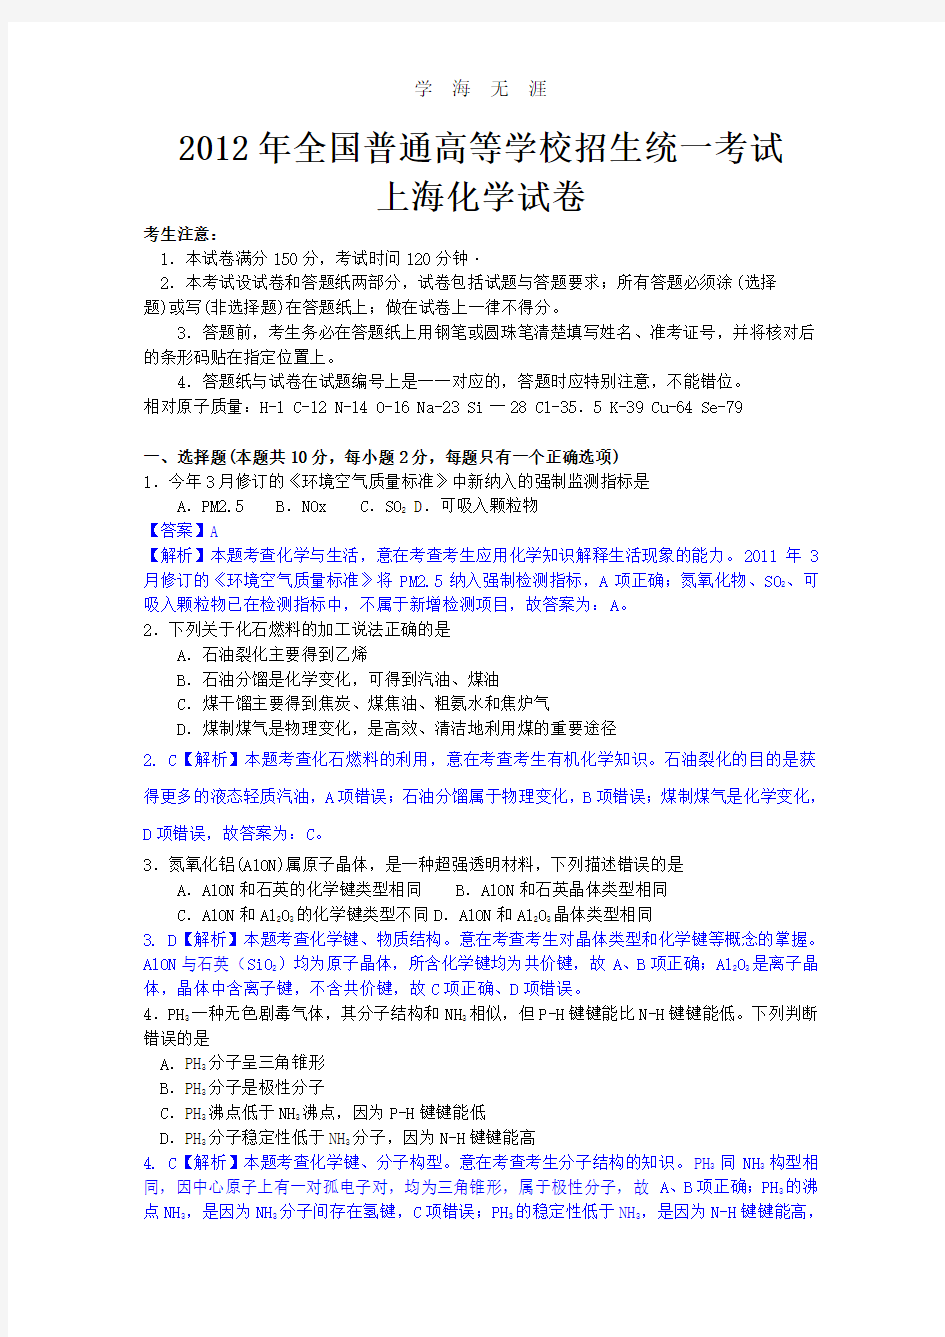 化学高考试题答案及解析-上海.pdf